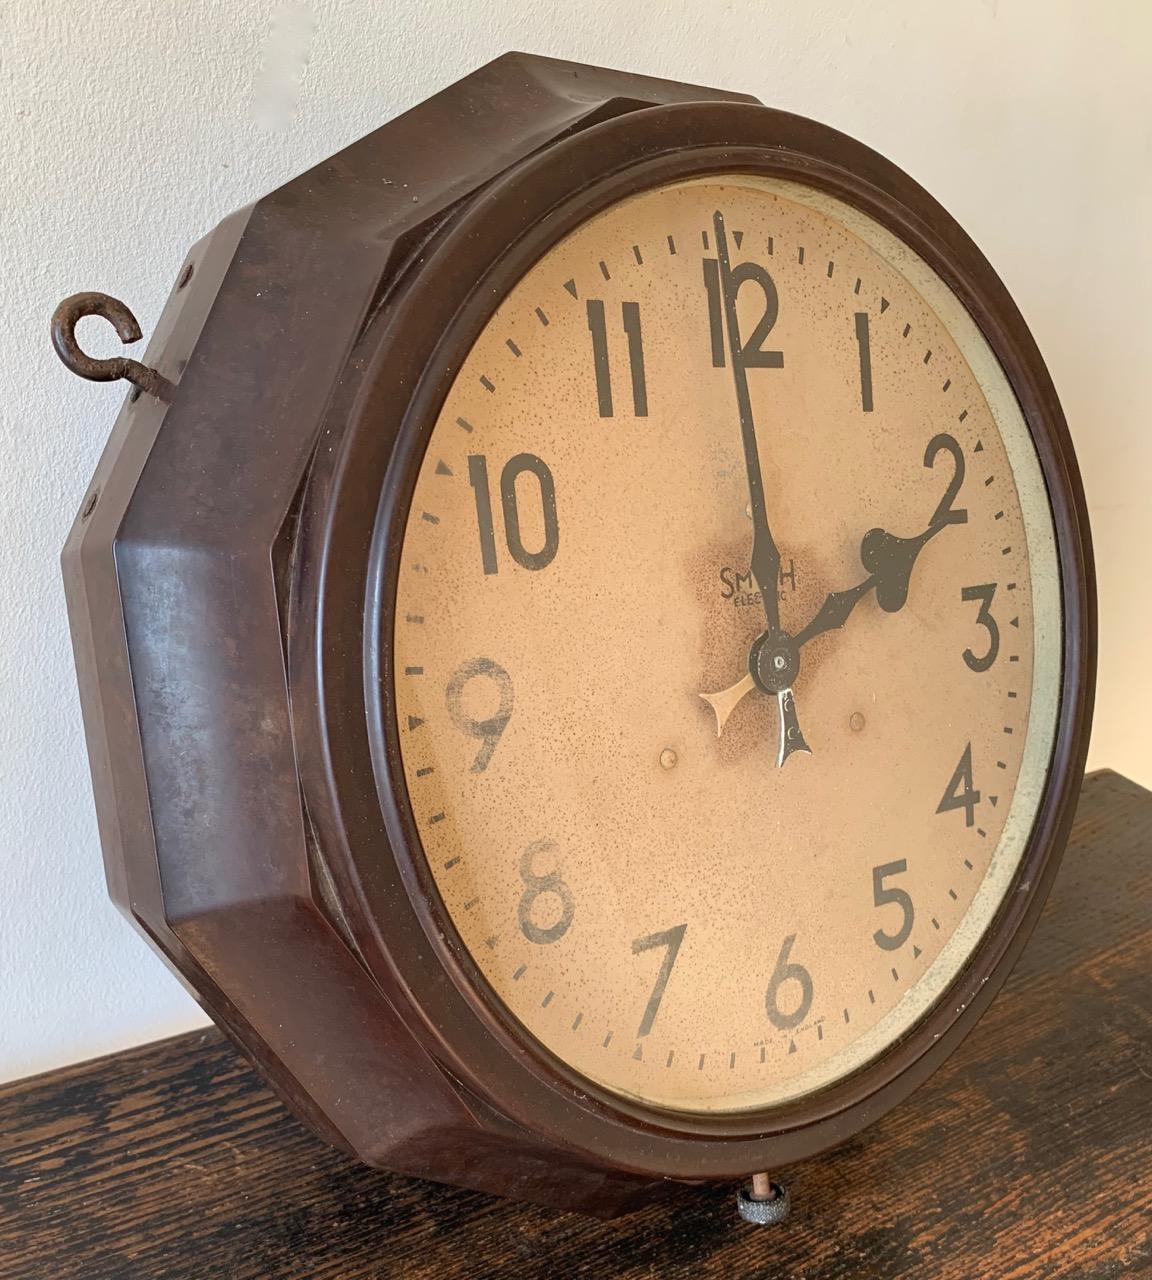 Eine seltene doppelseitige Uhr von Smith Electric. Das Gehäuse ist aus Bakelit und das Zifferblatt aus lackiertem Metall. Der Fall ist eine seltene 12-seitige Polygonform mit originalen Aufhängeschlaufen. Das ursprüngliche elektrische Uhrwerk